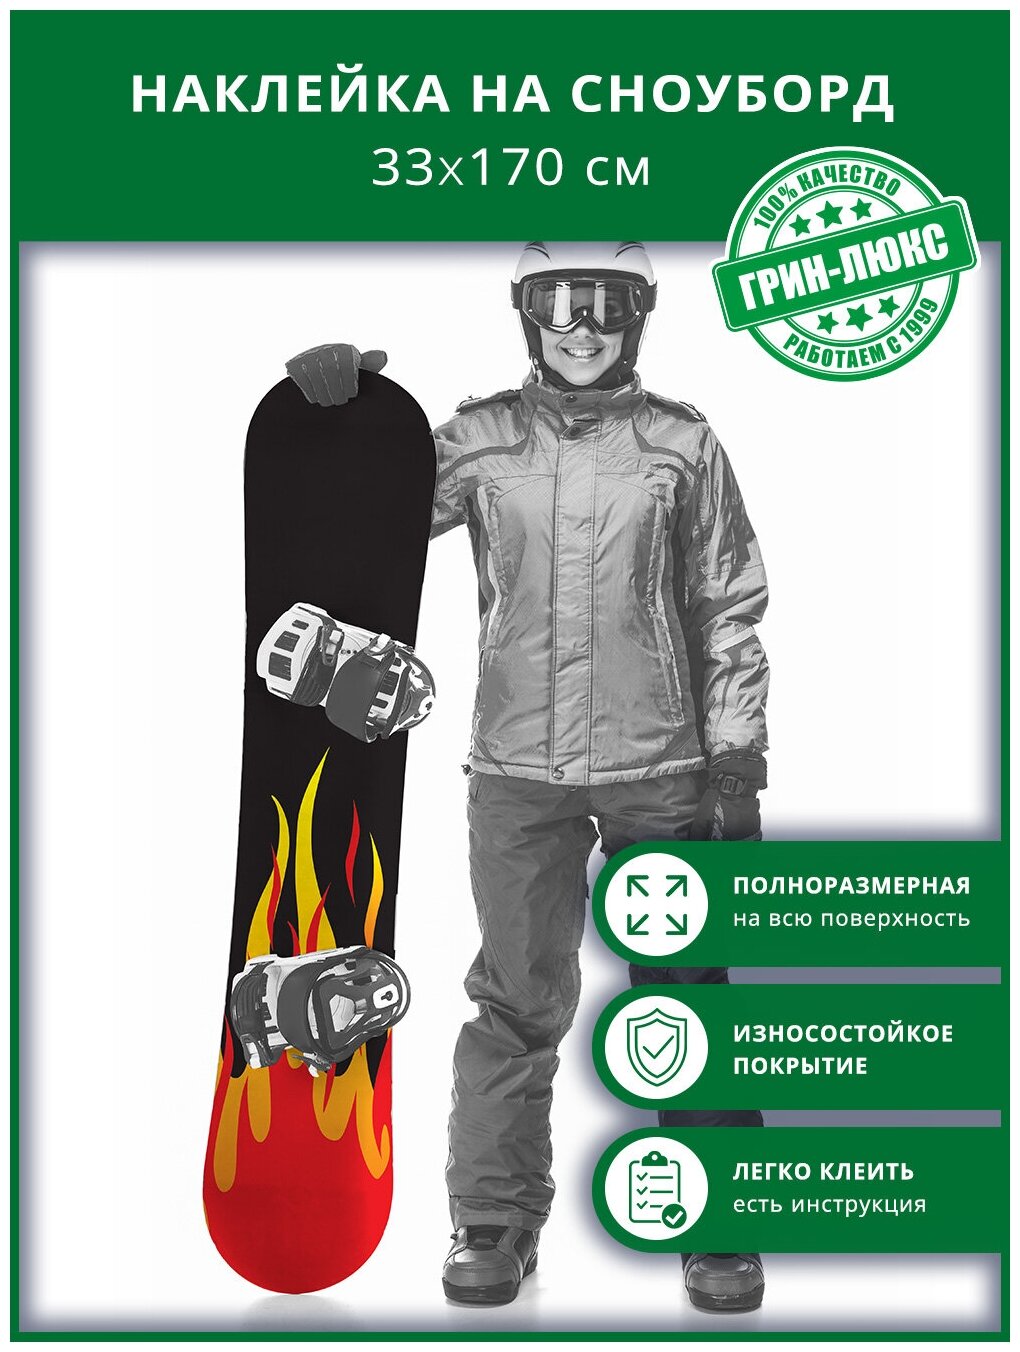 Наклейка на сноуборд с защитным глянцевым покрытием 33х170 см "Огненная доска"